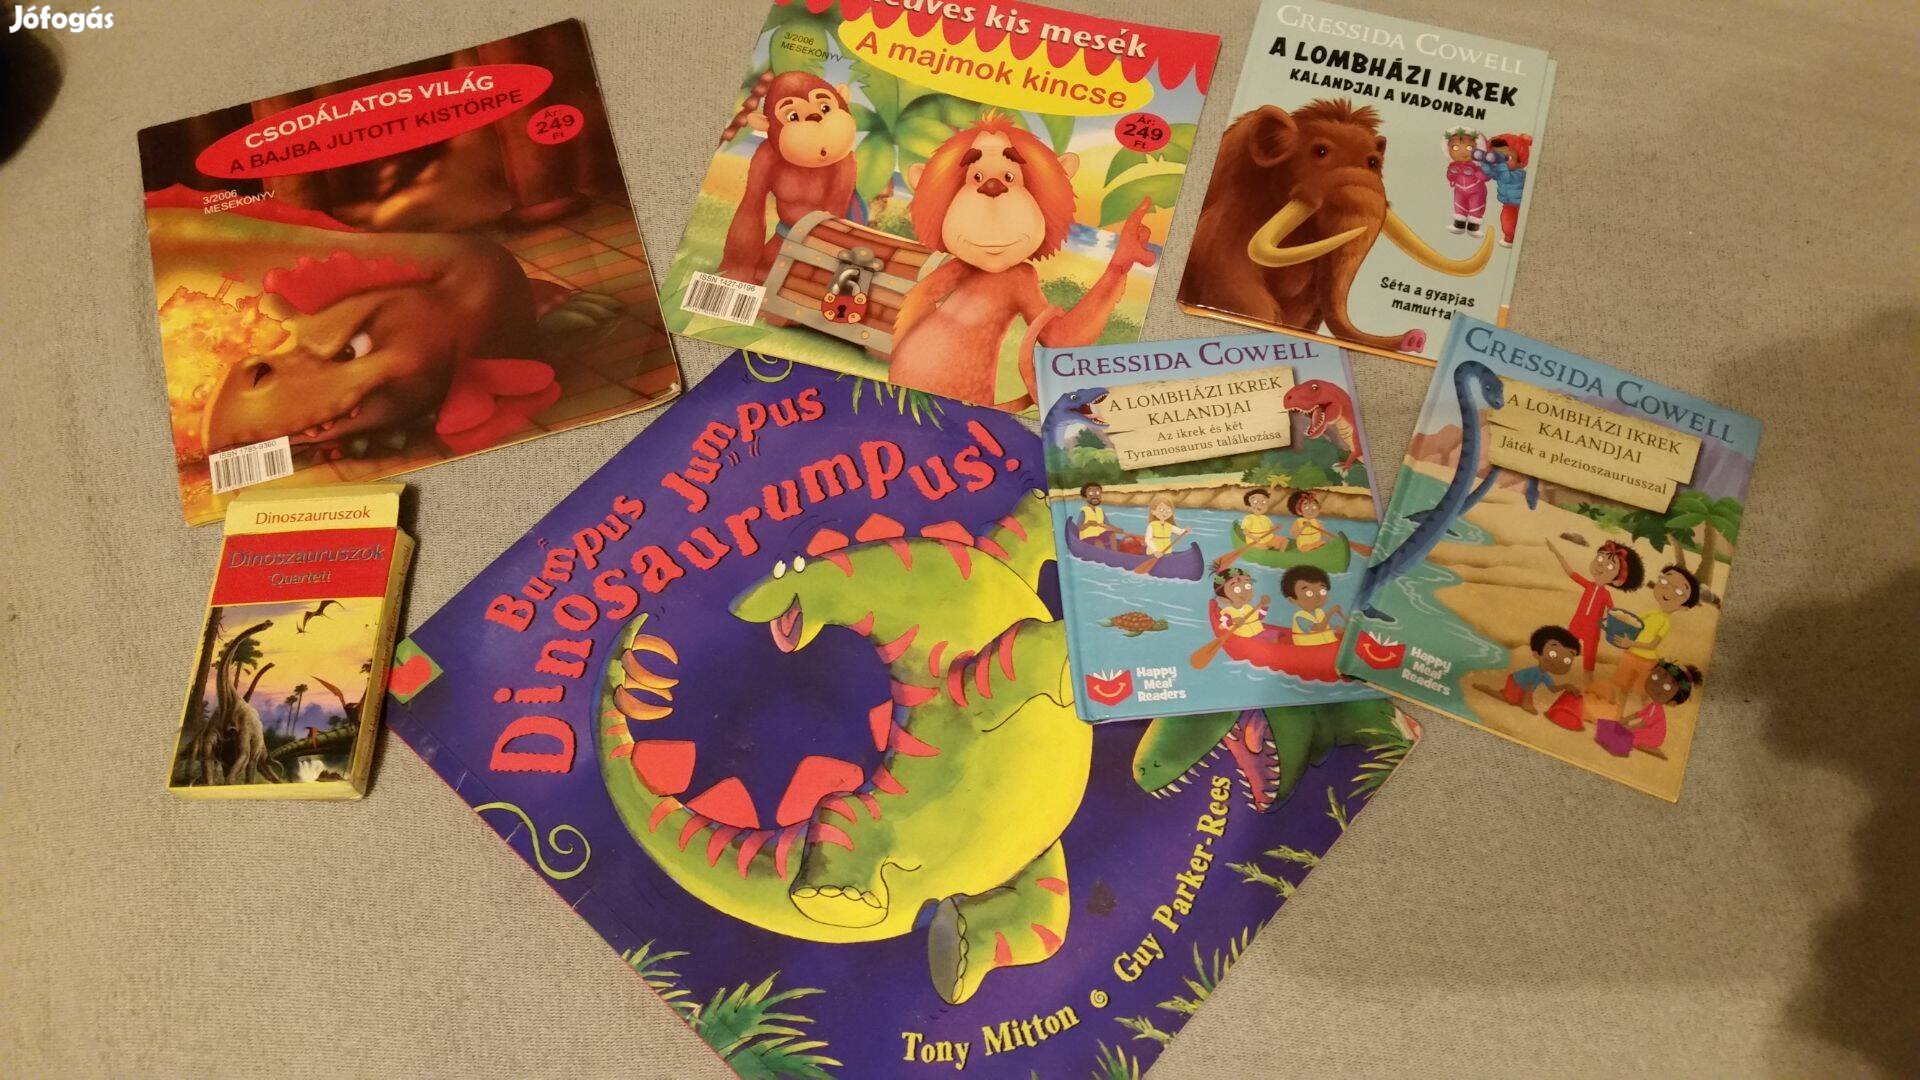 A Lombházi ikrek kalandjai + Dinoszaurusz kártya +ajándék könyvek, DVD